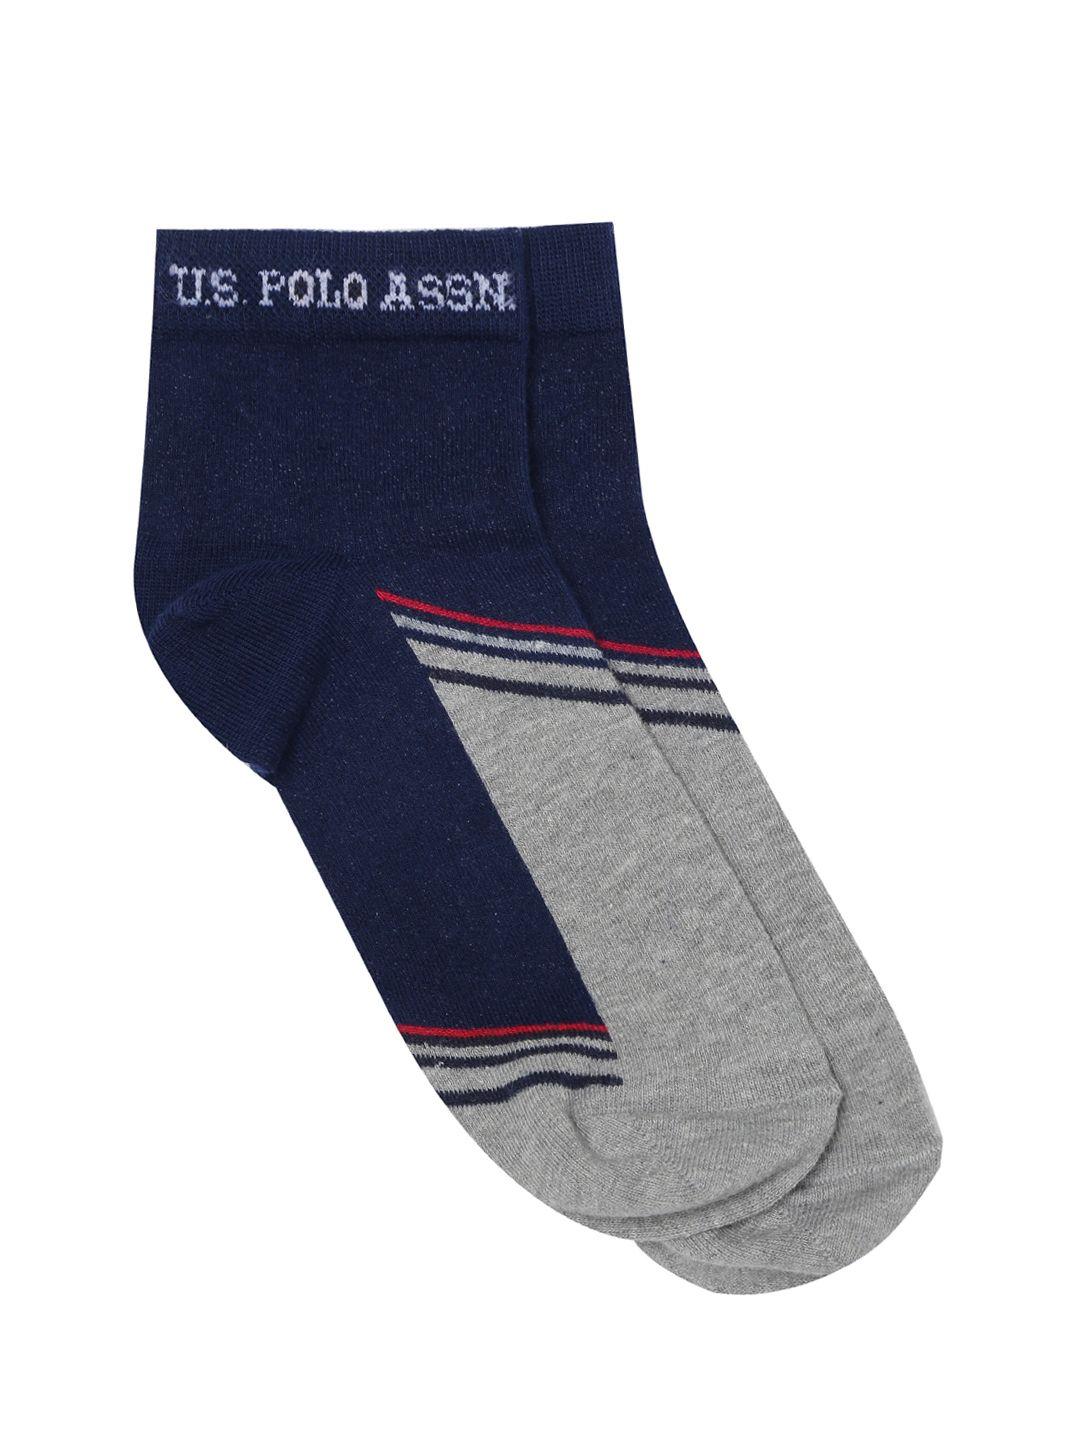 u.s. polo assn. men navy blue & grey colourblocked above ankle length socks